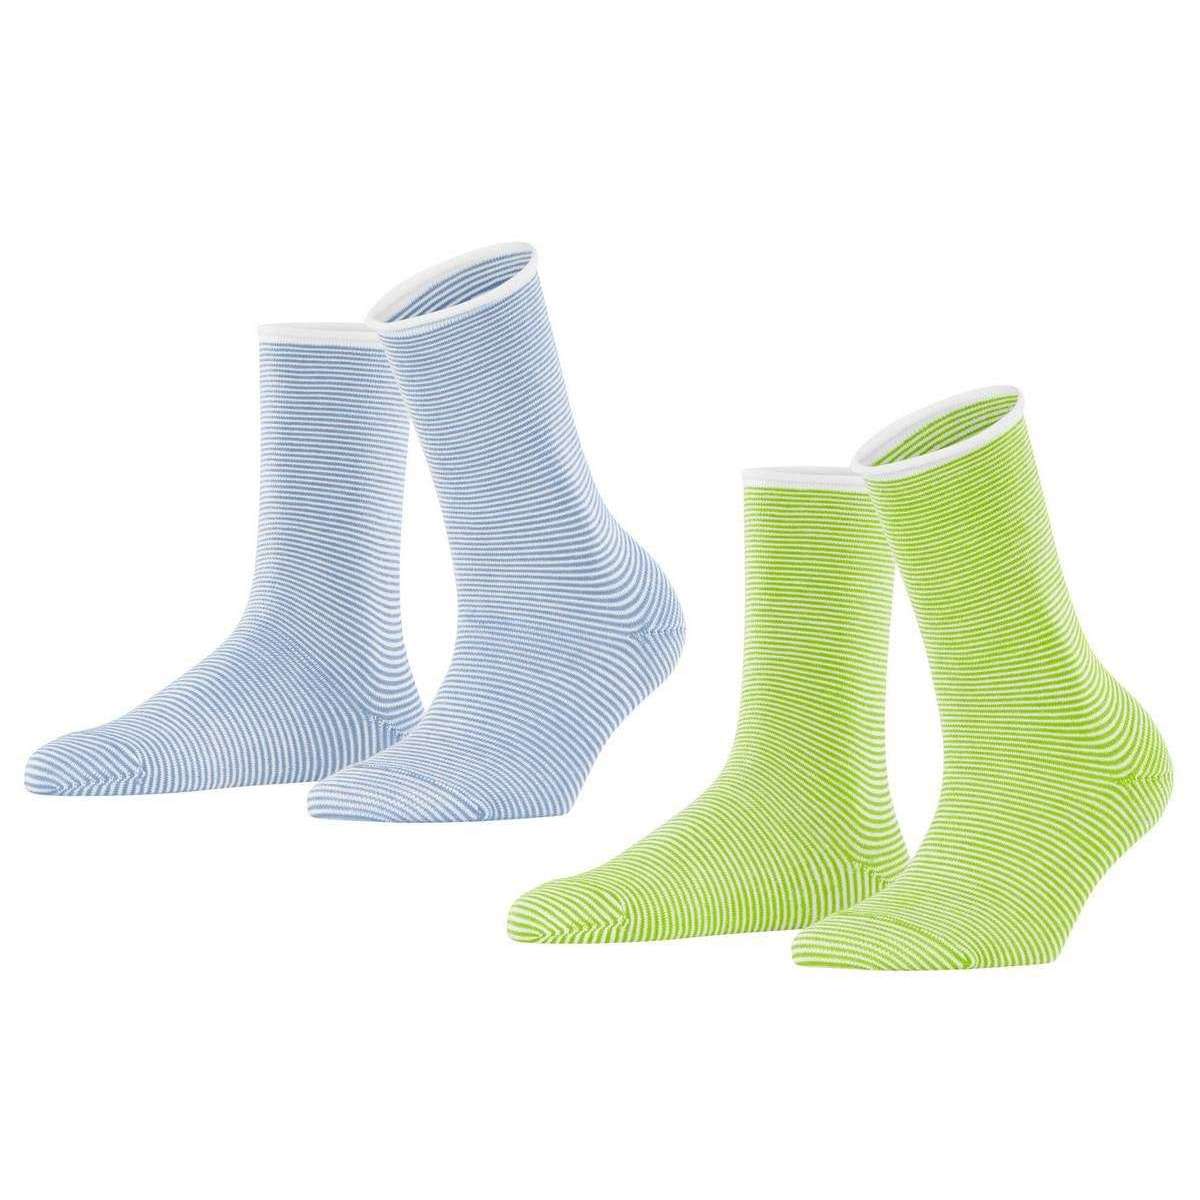 Esprit Allover Stripe 2 Pack Socks - Green/Blue